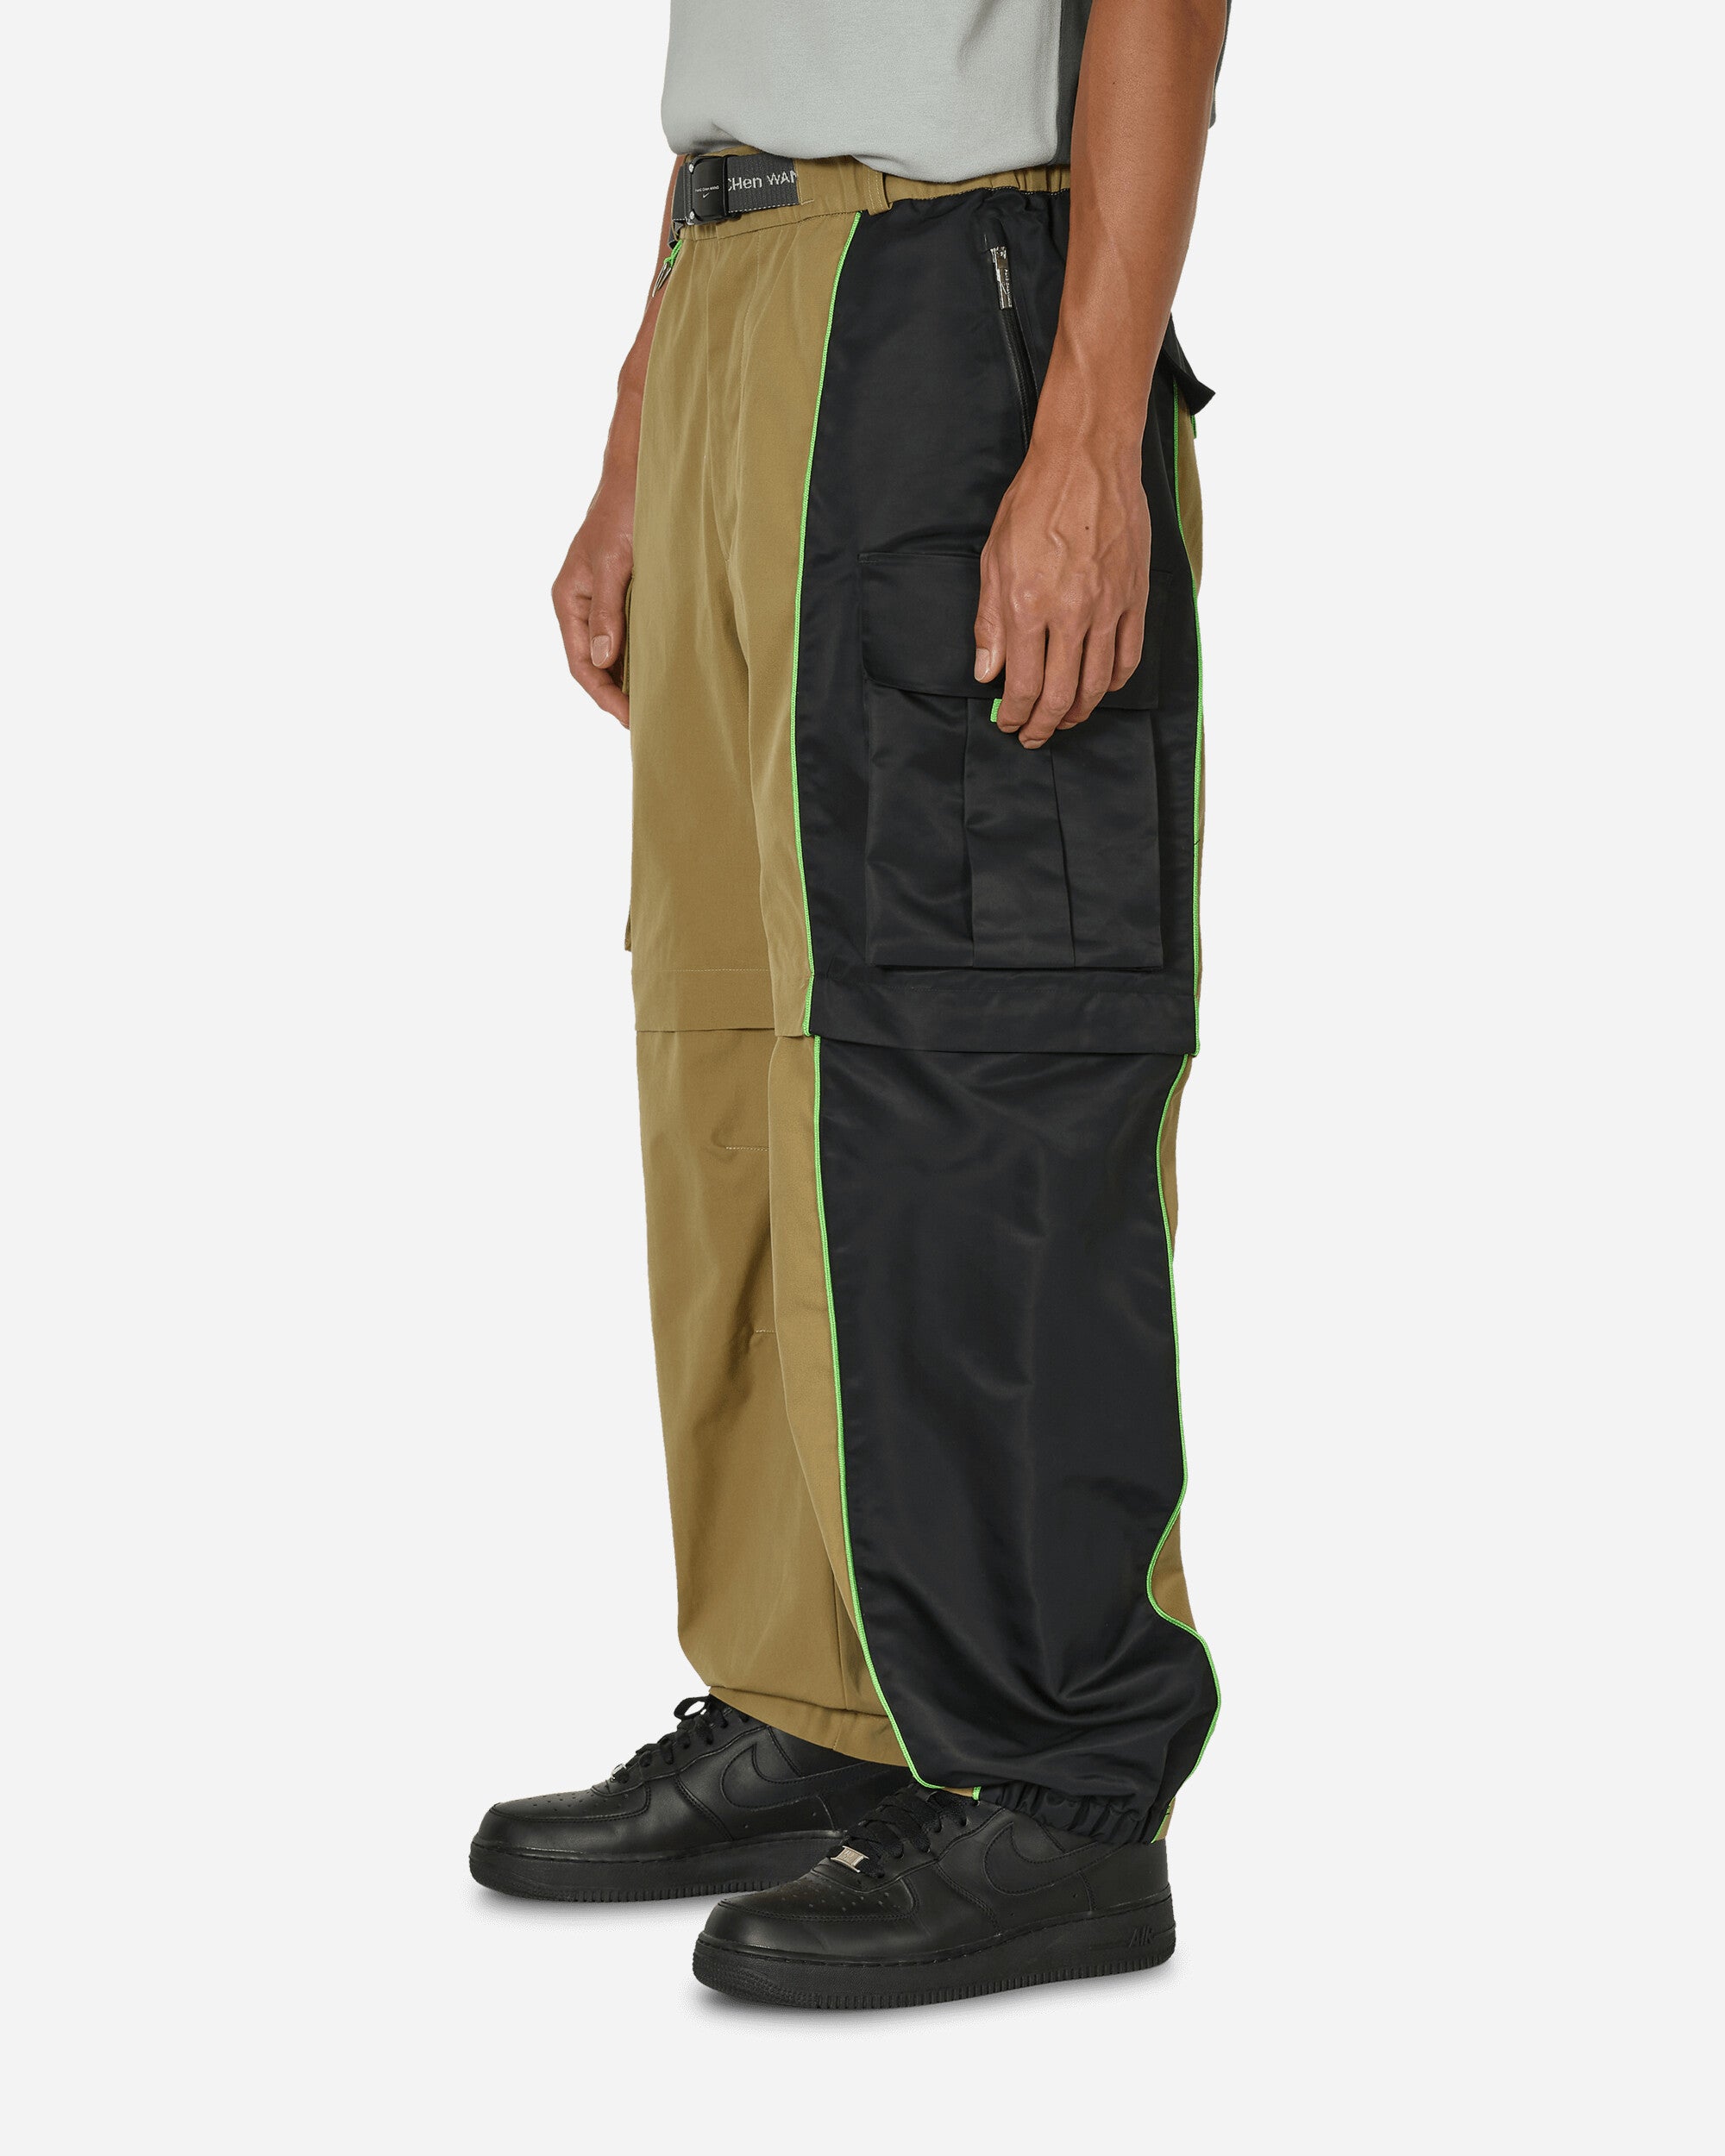 Nike Nrg Np Cargo Pants Khaki/Black Pants Cargo DV4004-255